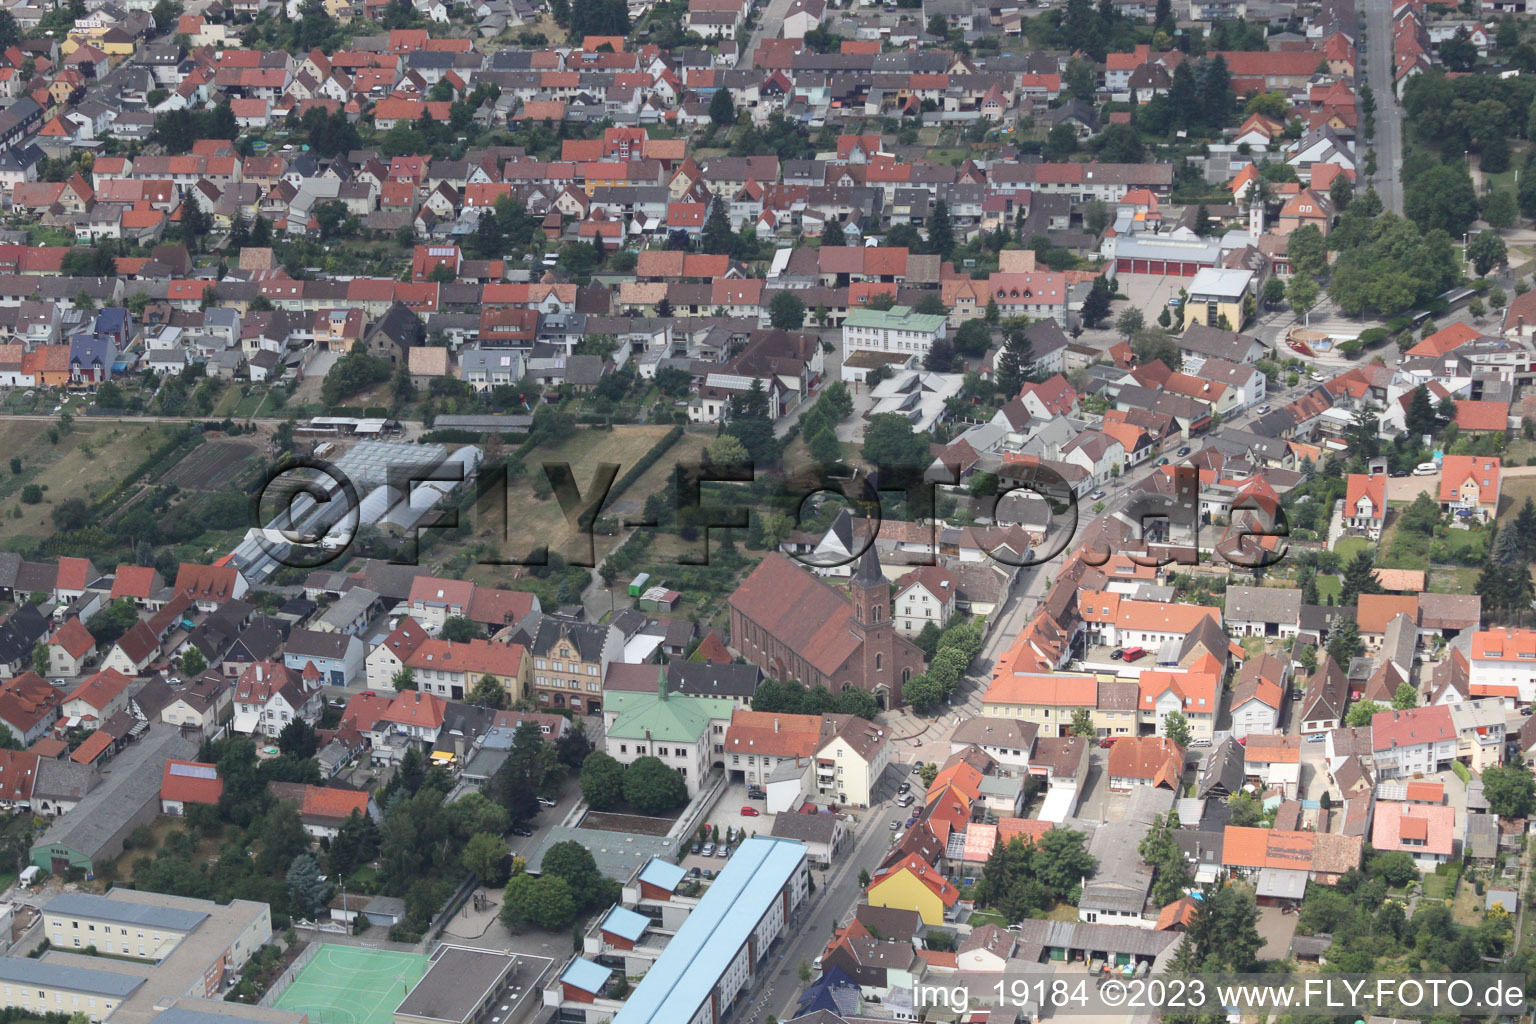 Wiesental im Bundesland Baden-Württemberg, Deutschland aus der Luft betrachtet